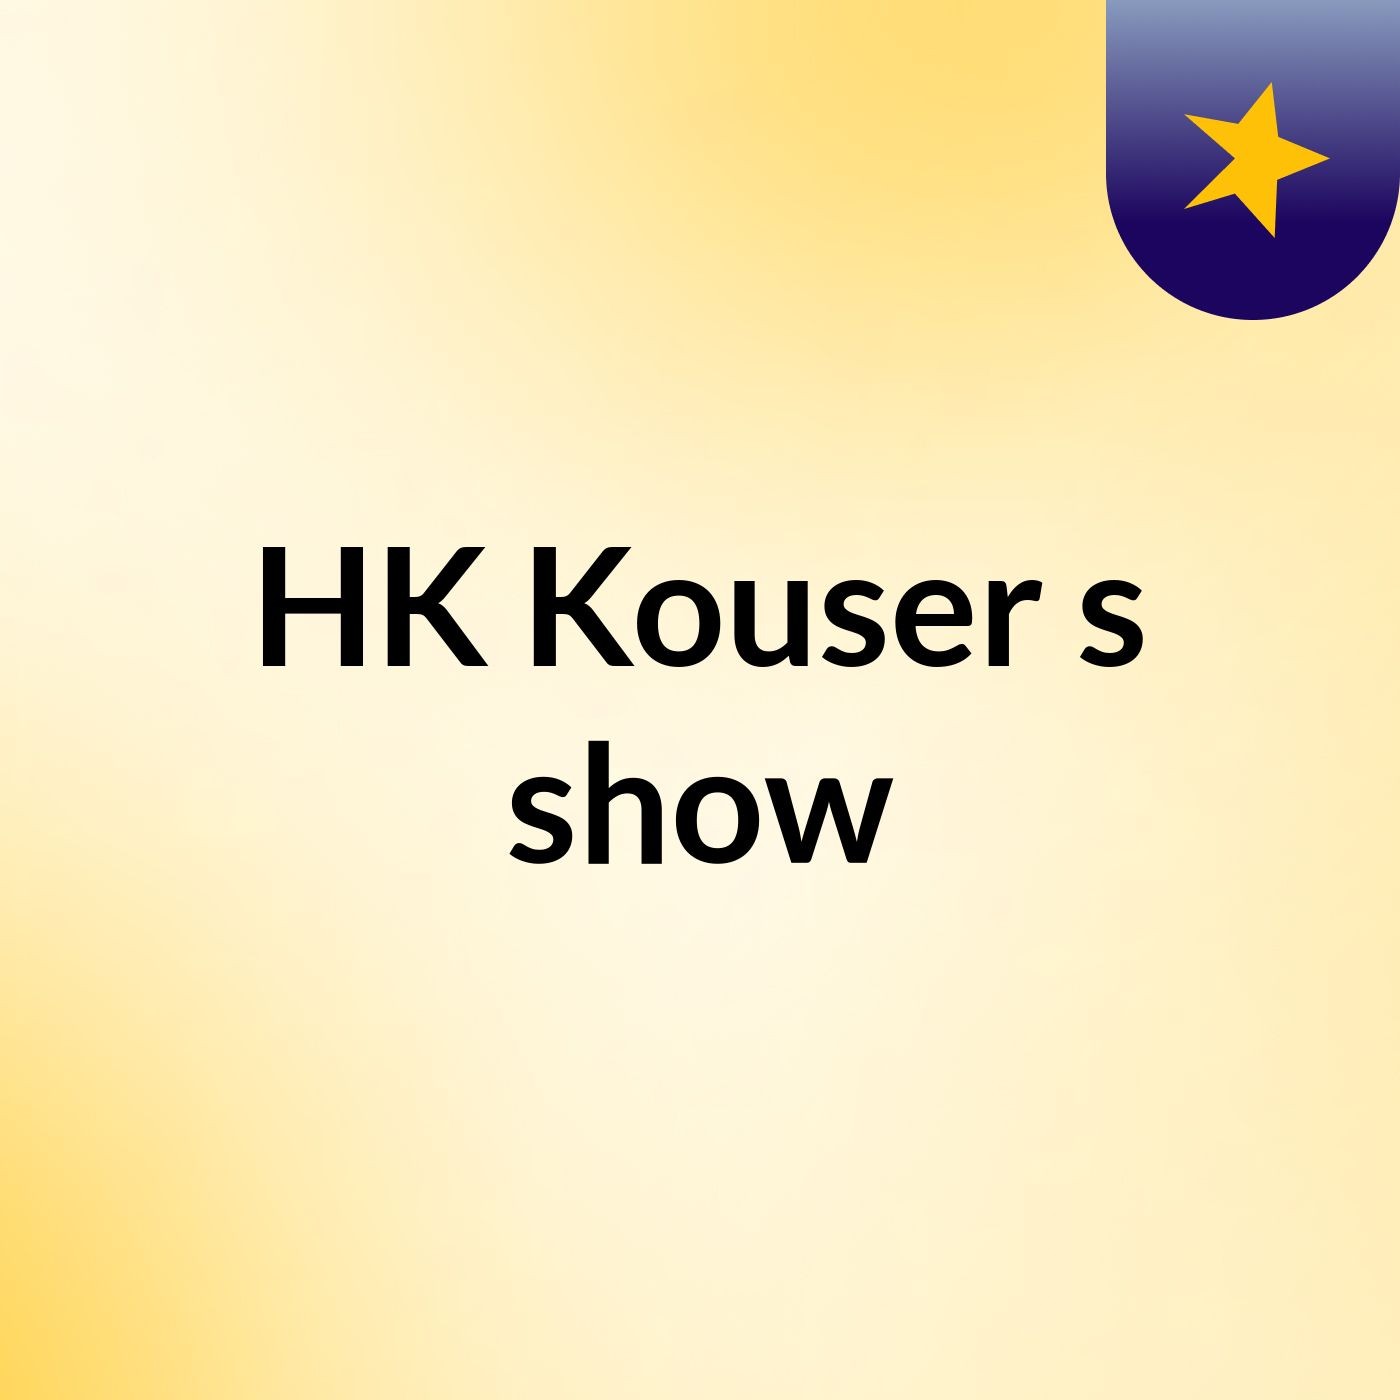 HK Kouser's show